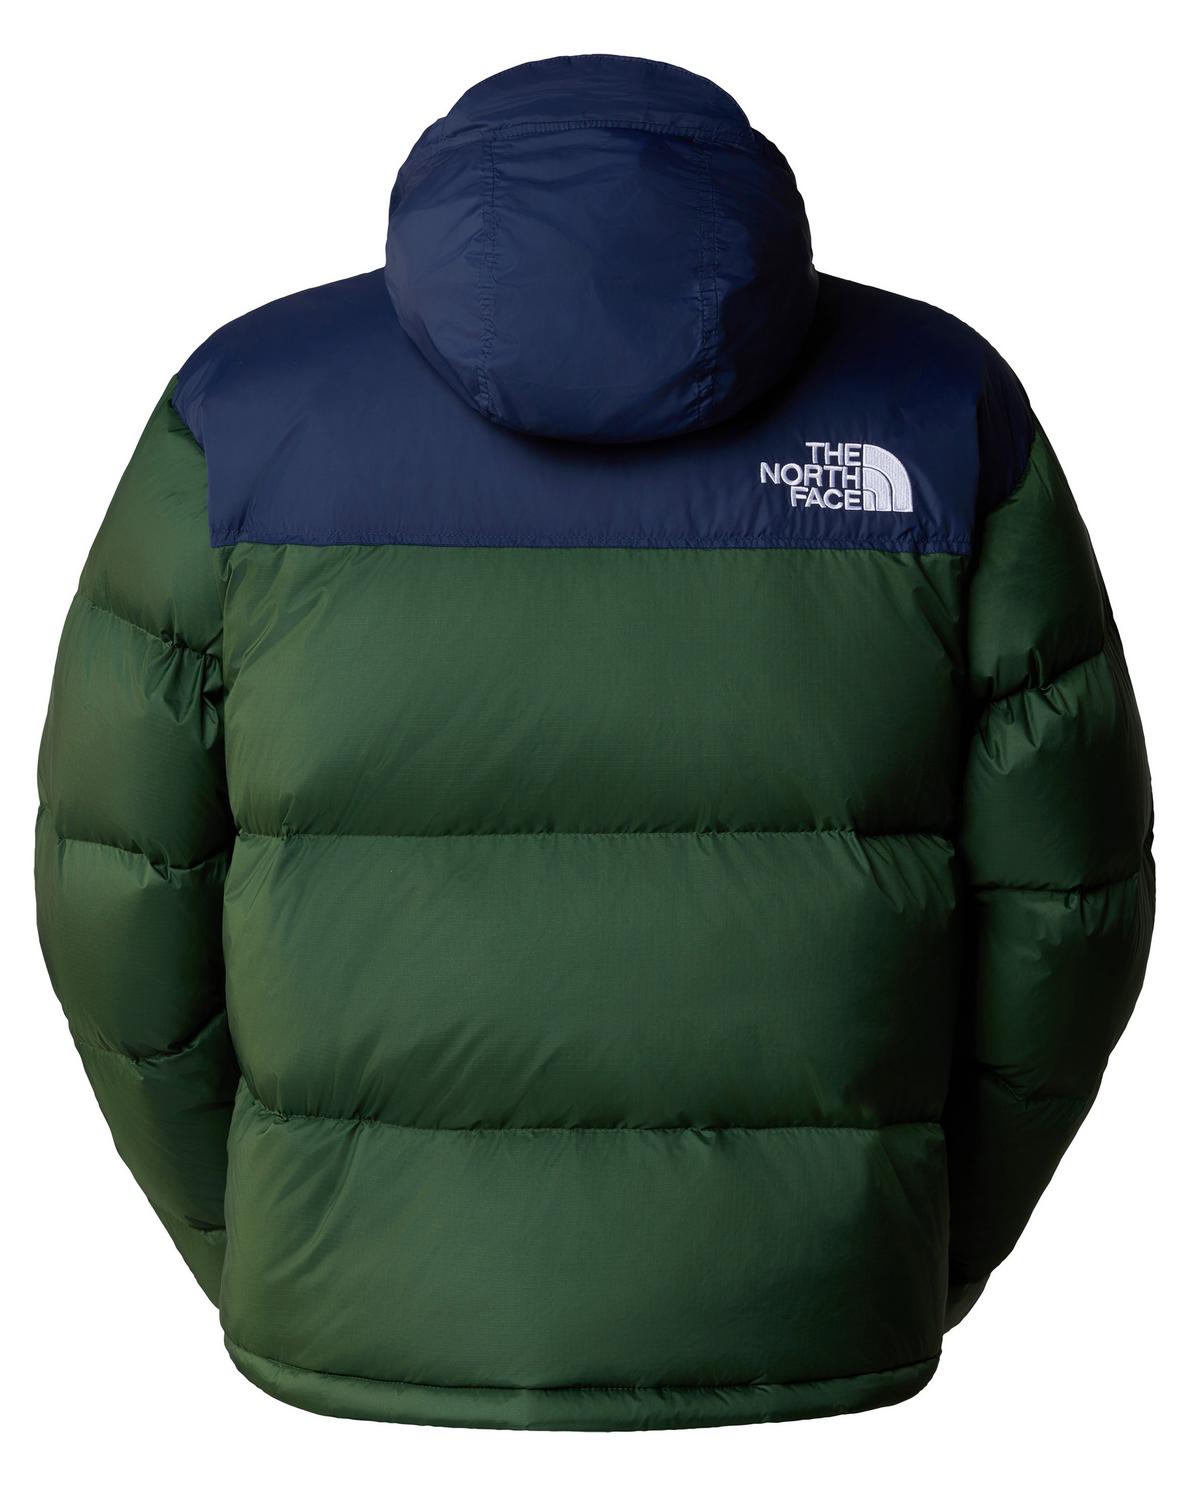 The North Face Men’s 1996 Retro Nuptse Jacket -  Dark Green